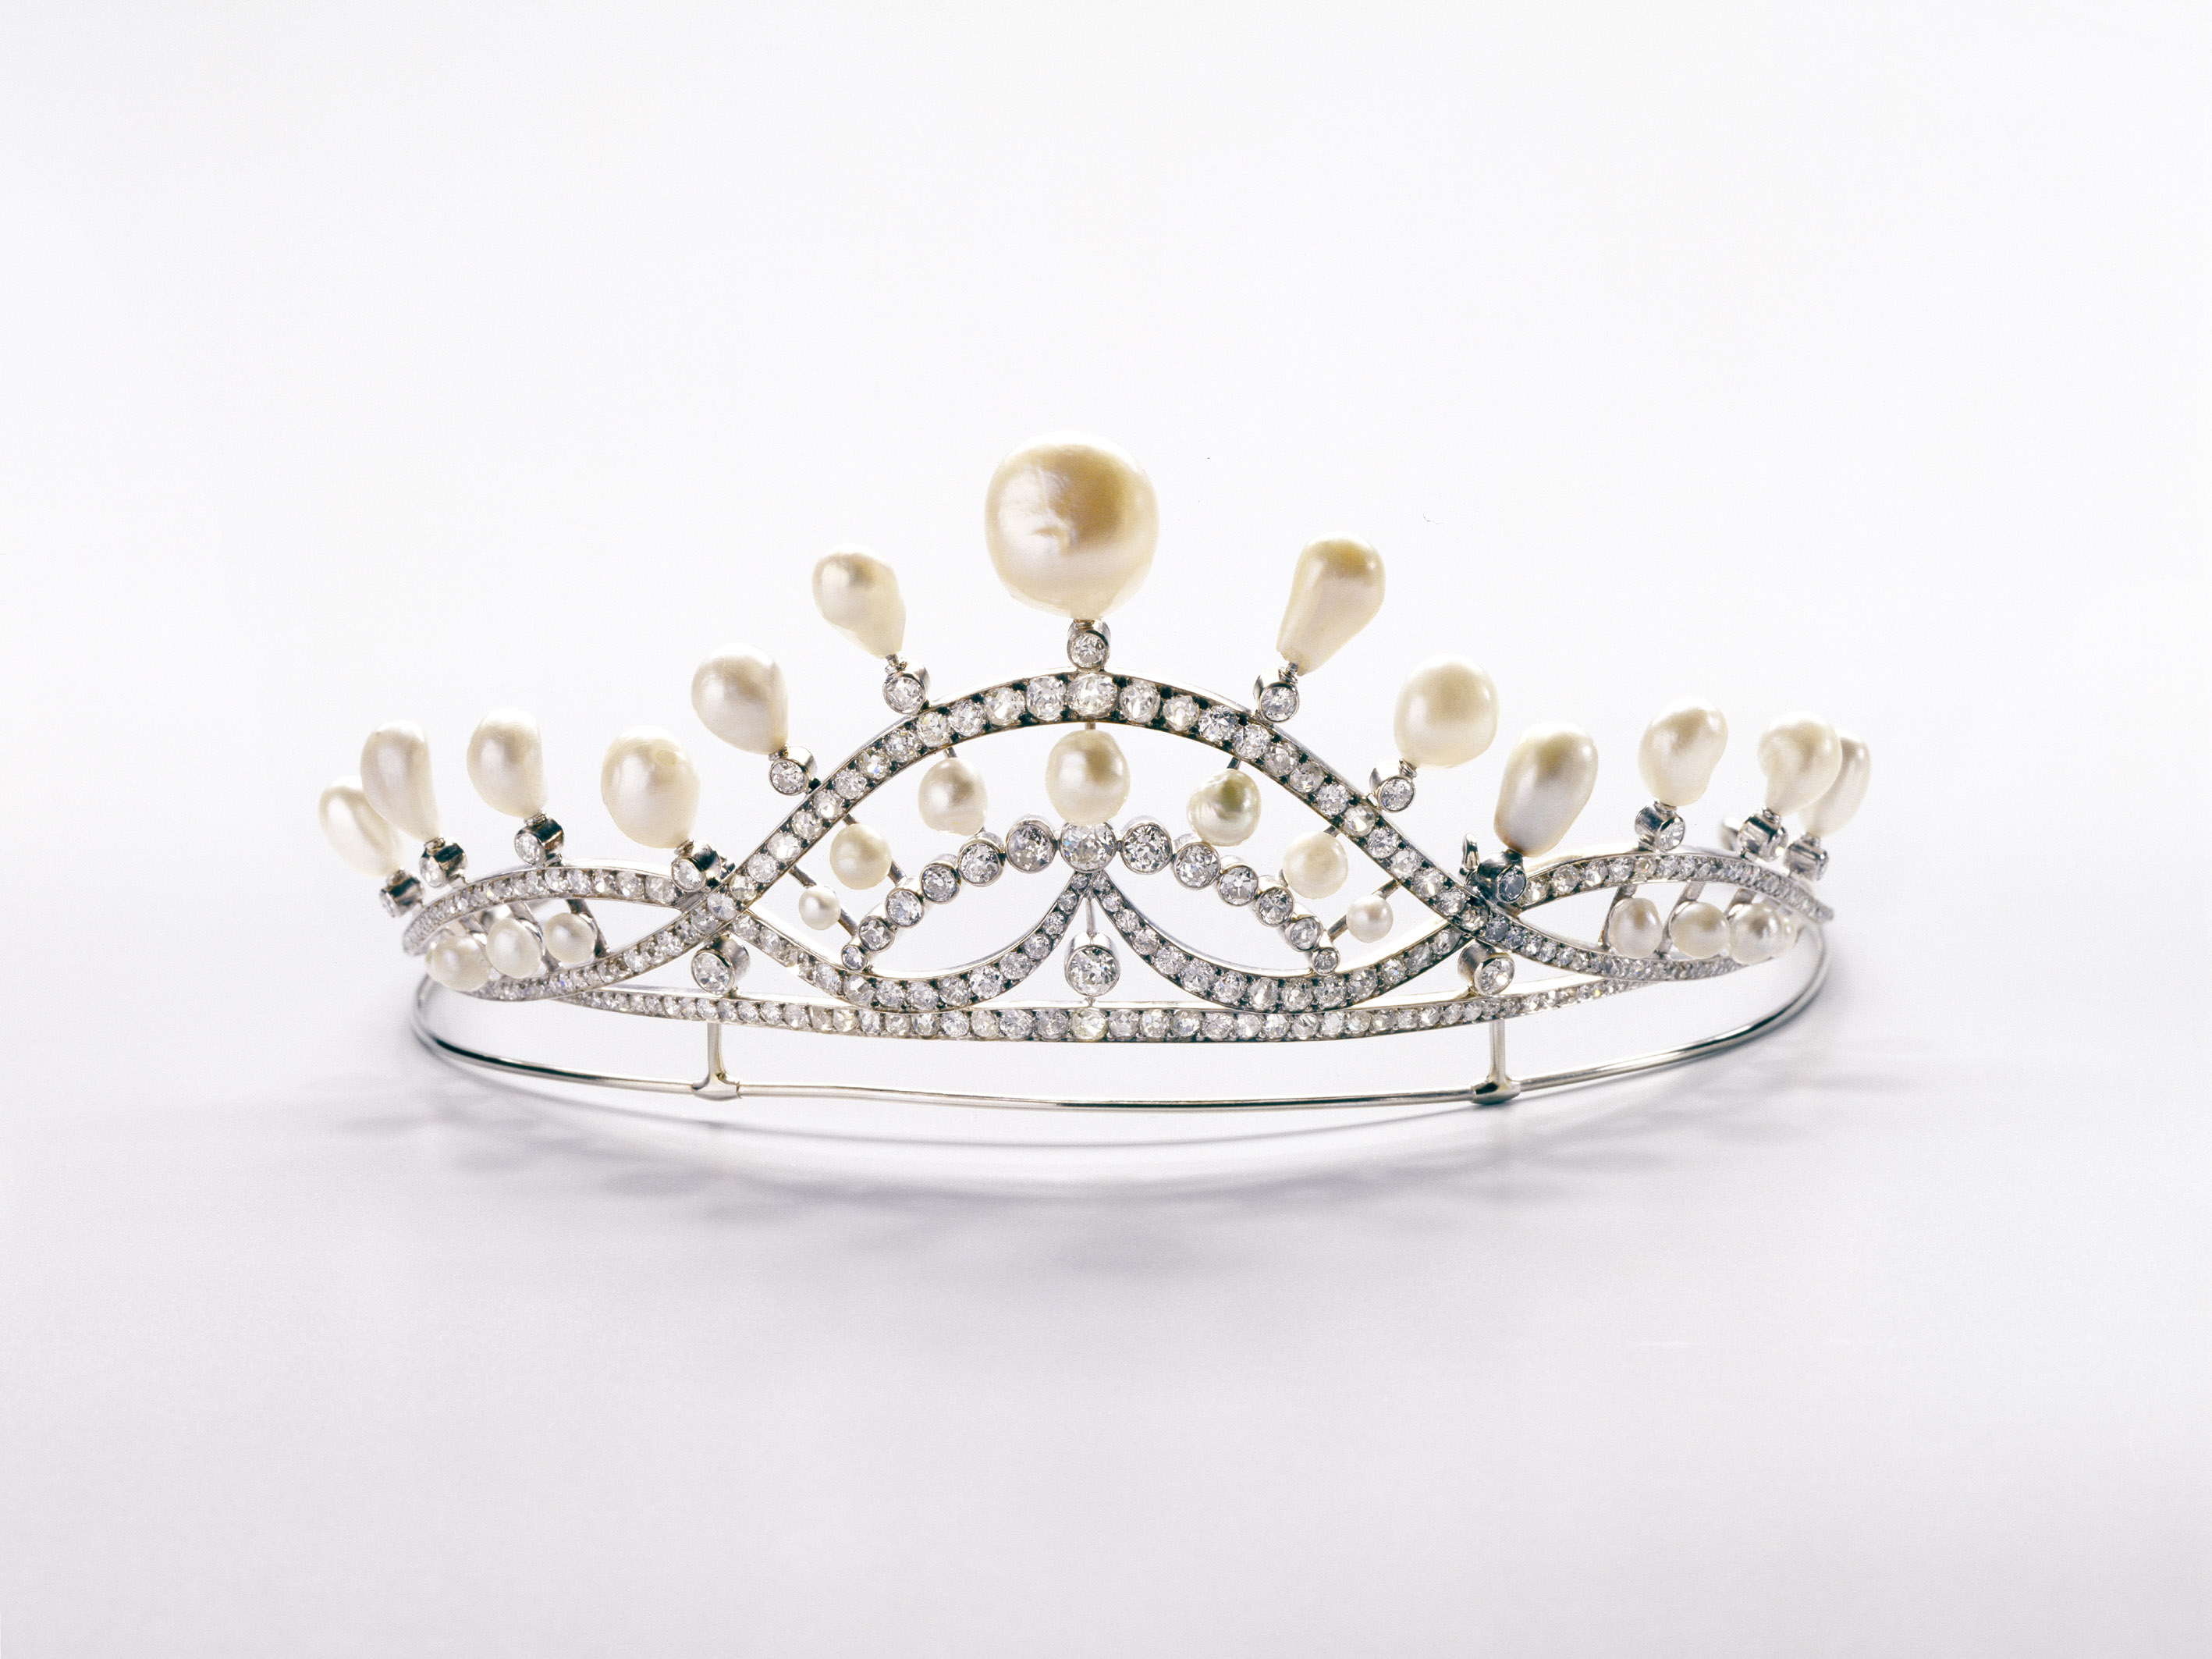 217-Chaumet pearl tiara